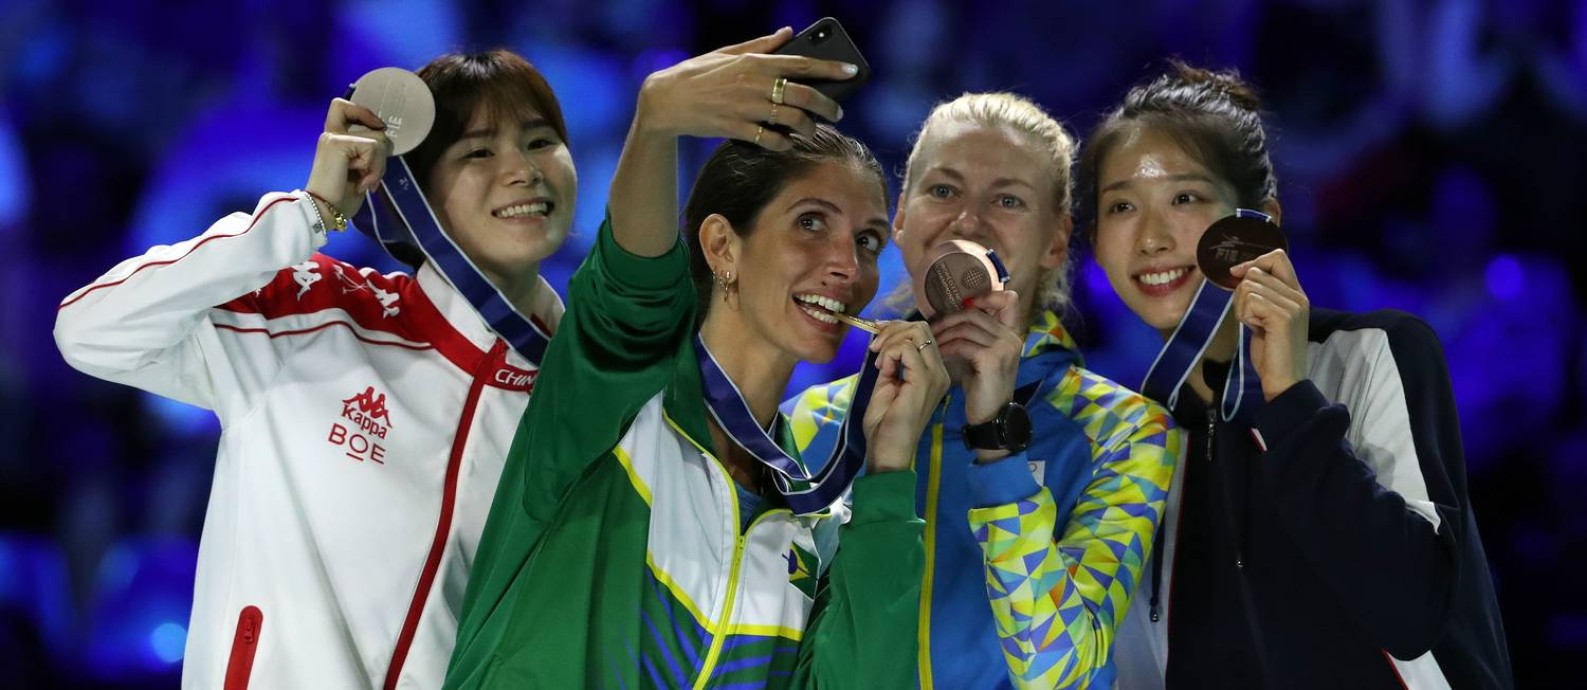 Hora da selfie: Nathalie Mollenhausen entre a chinesa Lin Sheng, medalha de prata, e as medalhistas de bronze Olena Kryvytska, da Ucrânia, e Vivian Kong Man Wai, de Hong Kong, no pódio do Mundial de Esgrima de Budapeste Foto: PETER KOHALMI / AFP